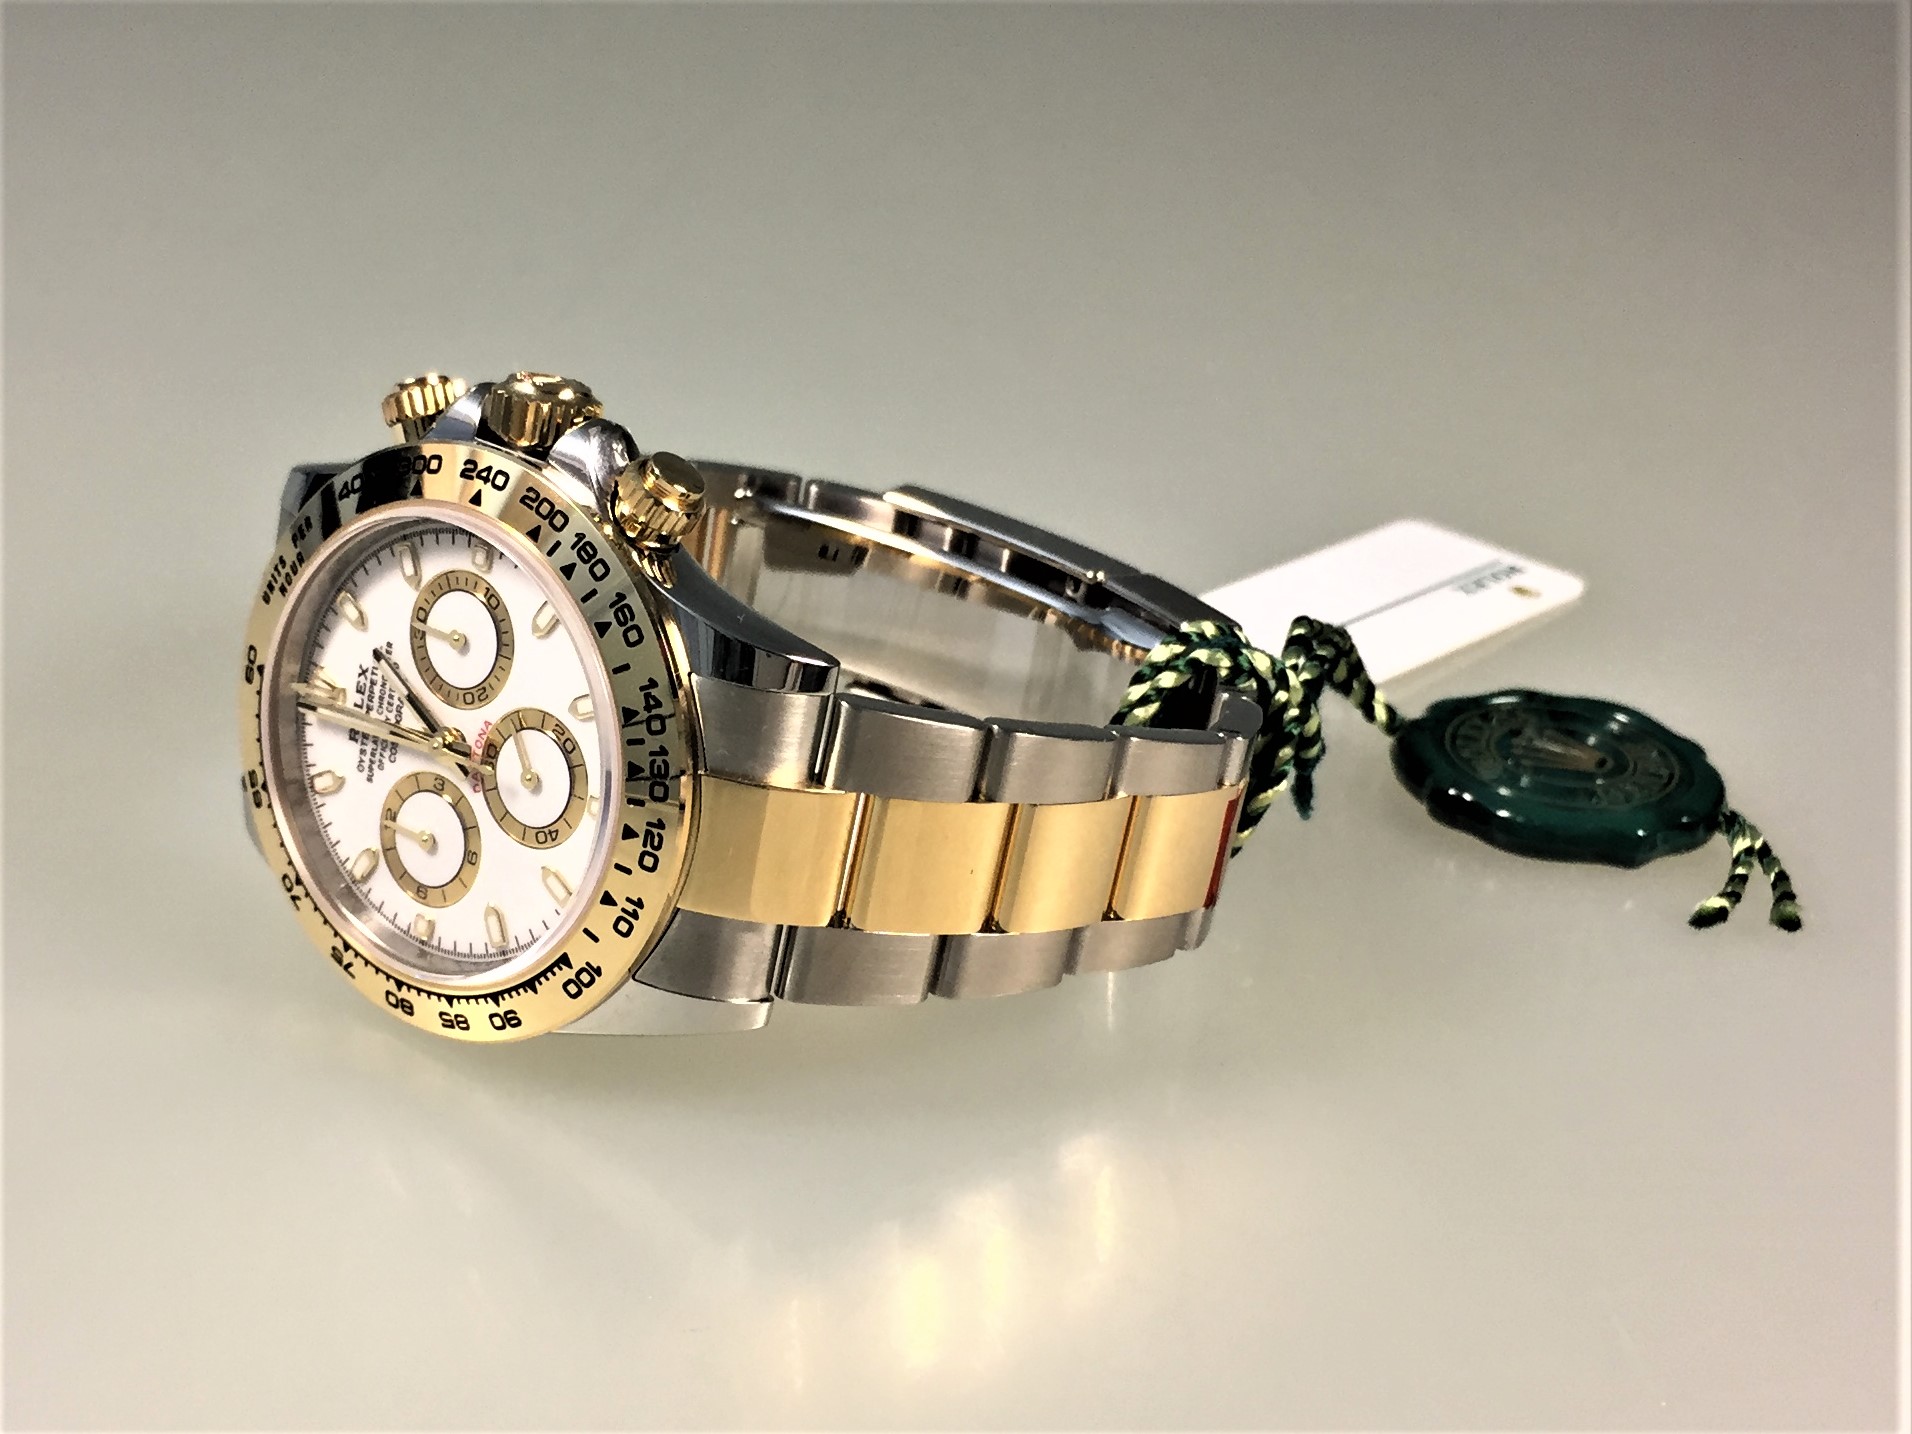 Daytona, Stahl/Gelbgold, Ref. 116503, Zifferblatt weiss | Rolex | Luxusuhren | S3watch AG